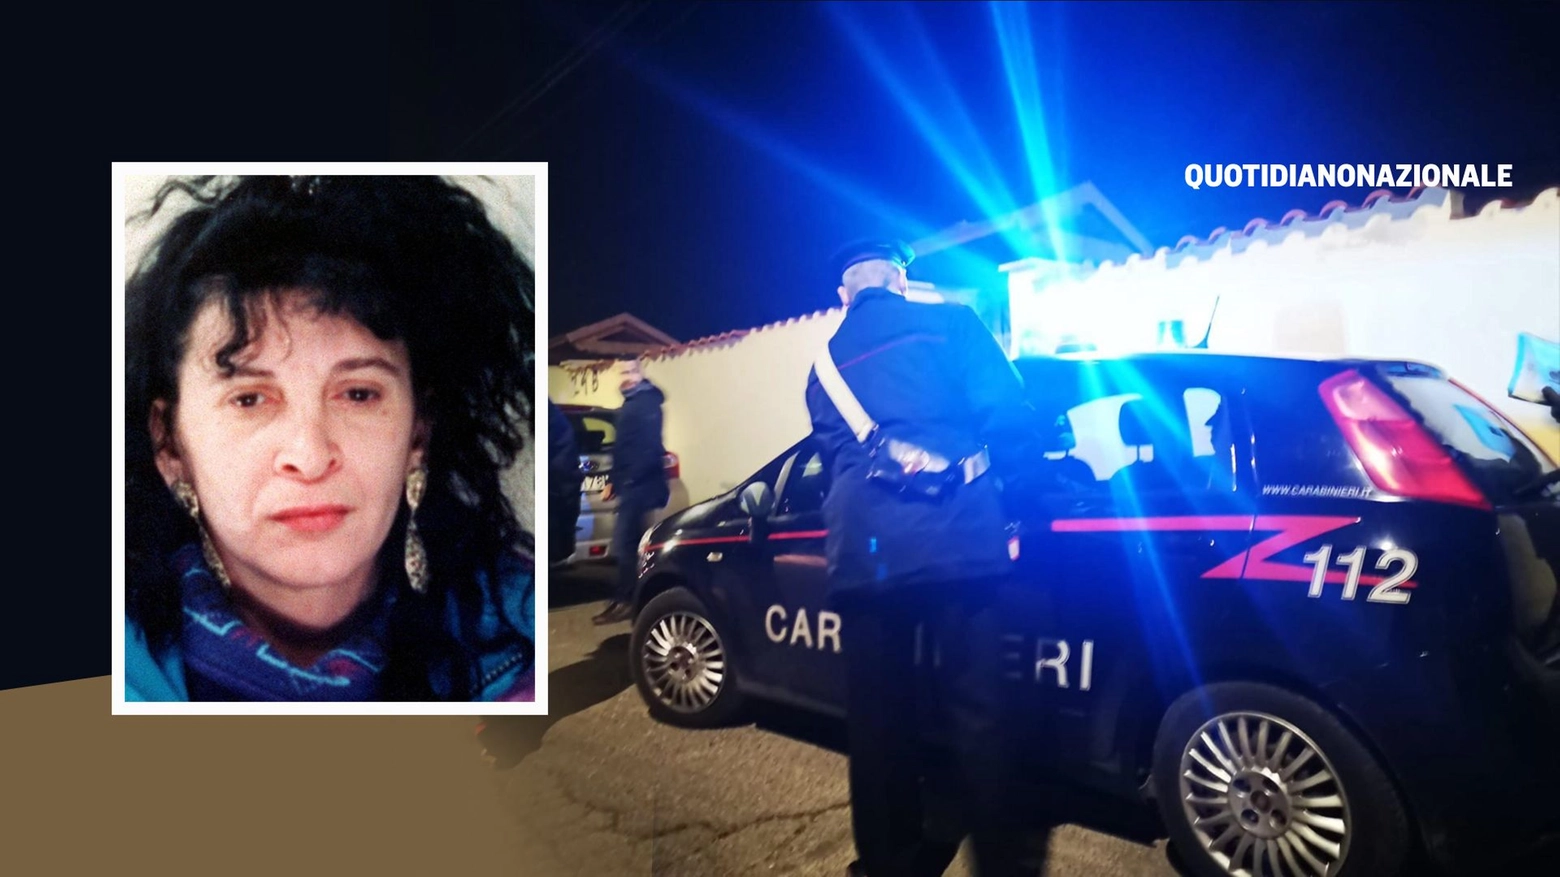 Fabiola Moretti fra i 21 arresti nell'operazione anti droga a sud di Roma